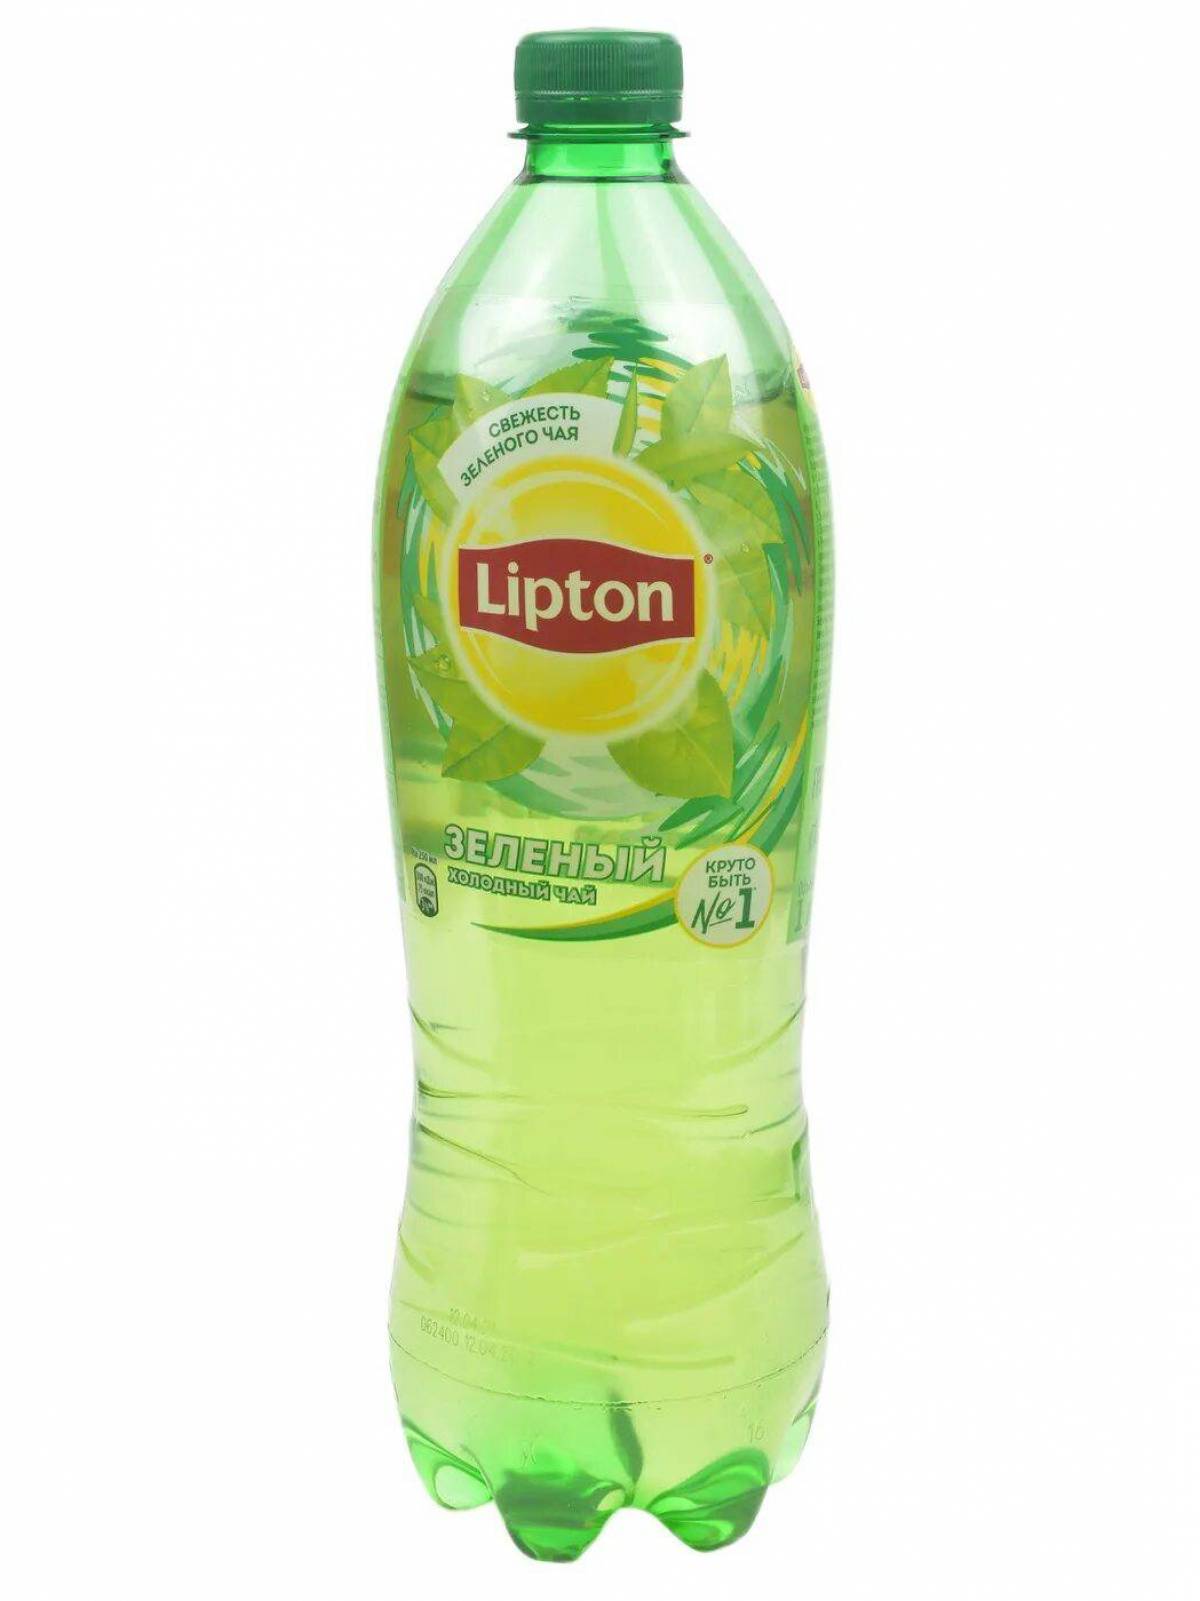 Картинки липтона. Липтон зеленый 1л. Липтон зеленый чай 1л. Чай Липтон зел. 1л. Липтон зелёный холодный чай.